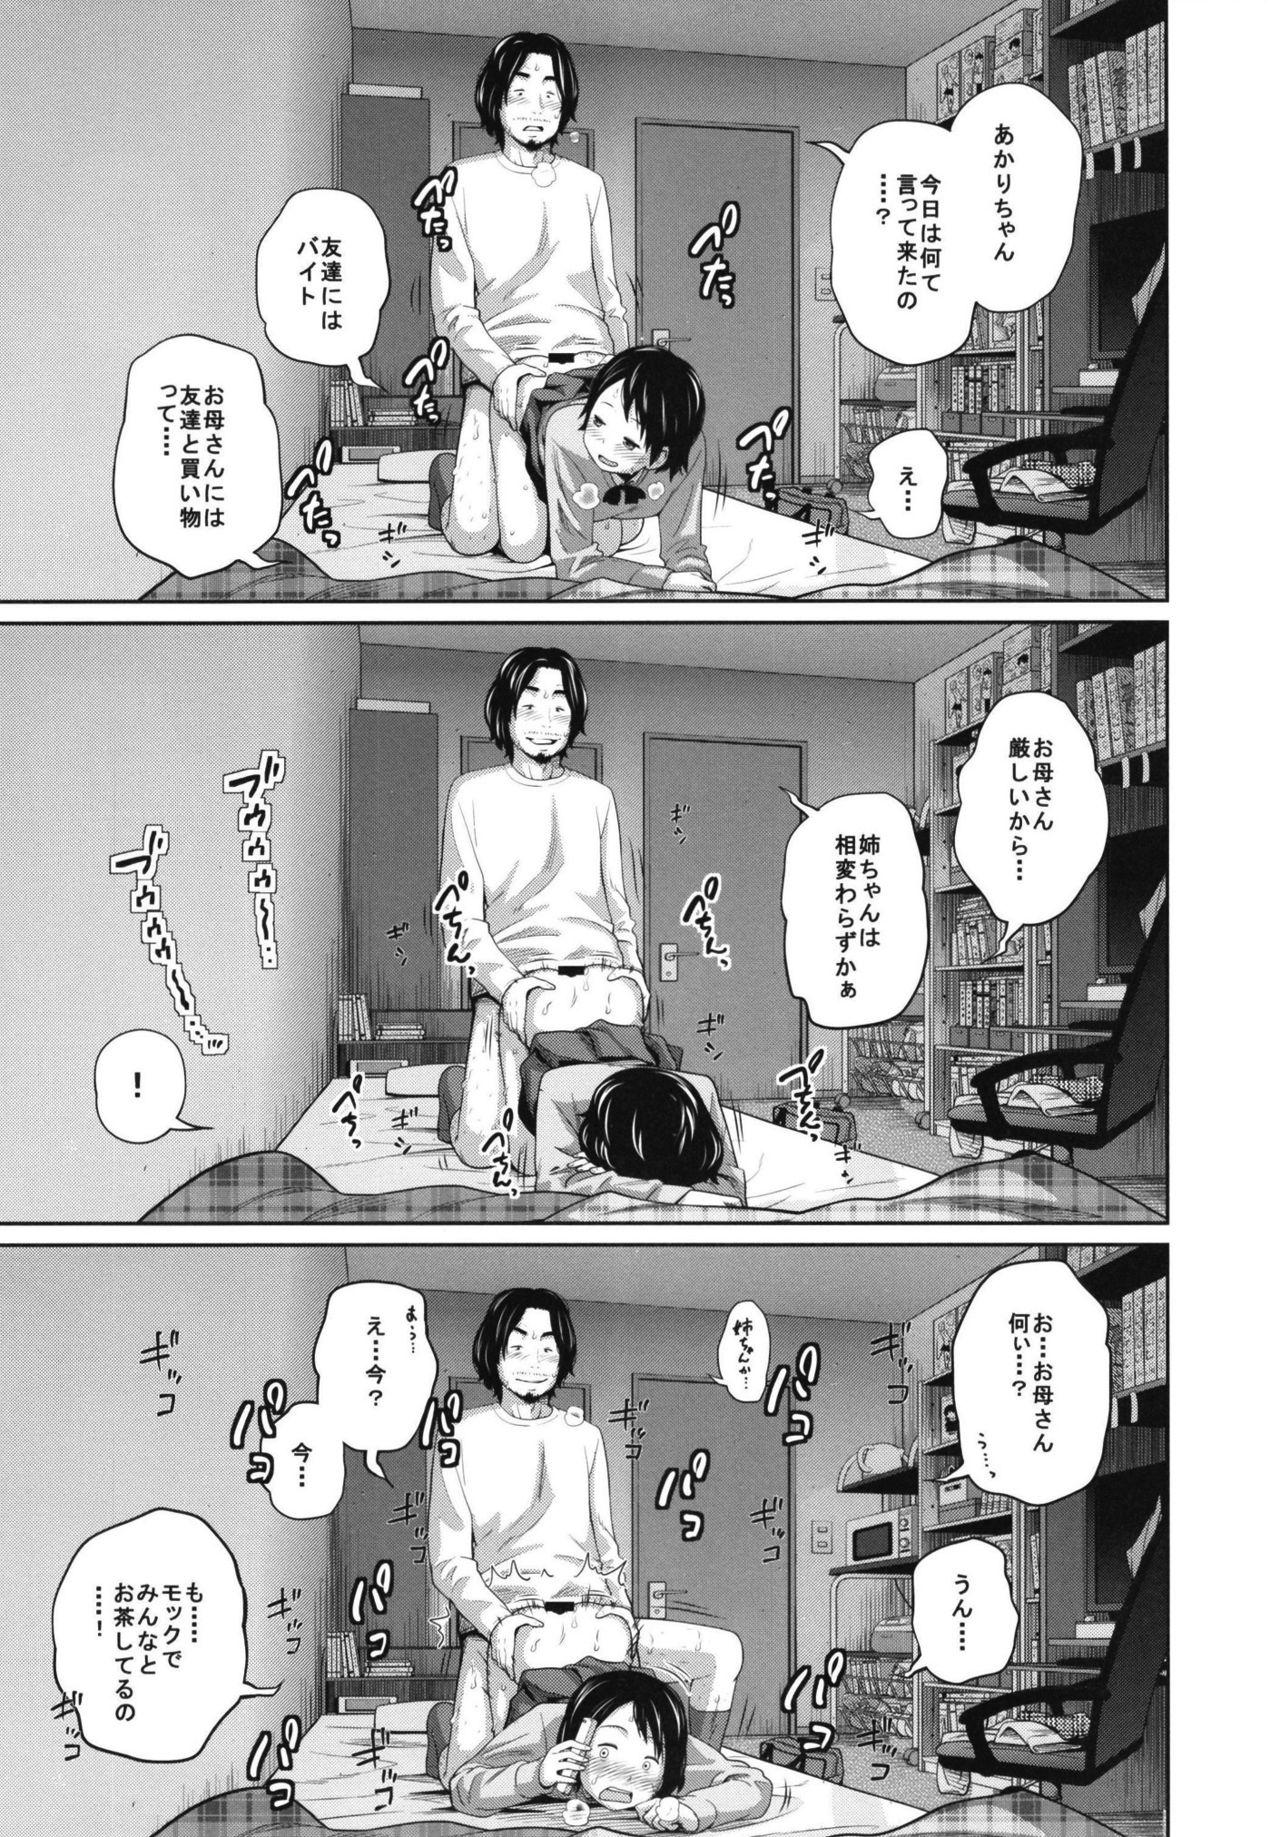 Latin Kono Naka ni Kinshin Soukan Shiteiru Musume ga 3-nin Imasu #02 Anus - Page 9